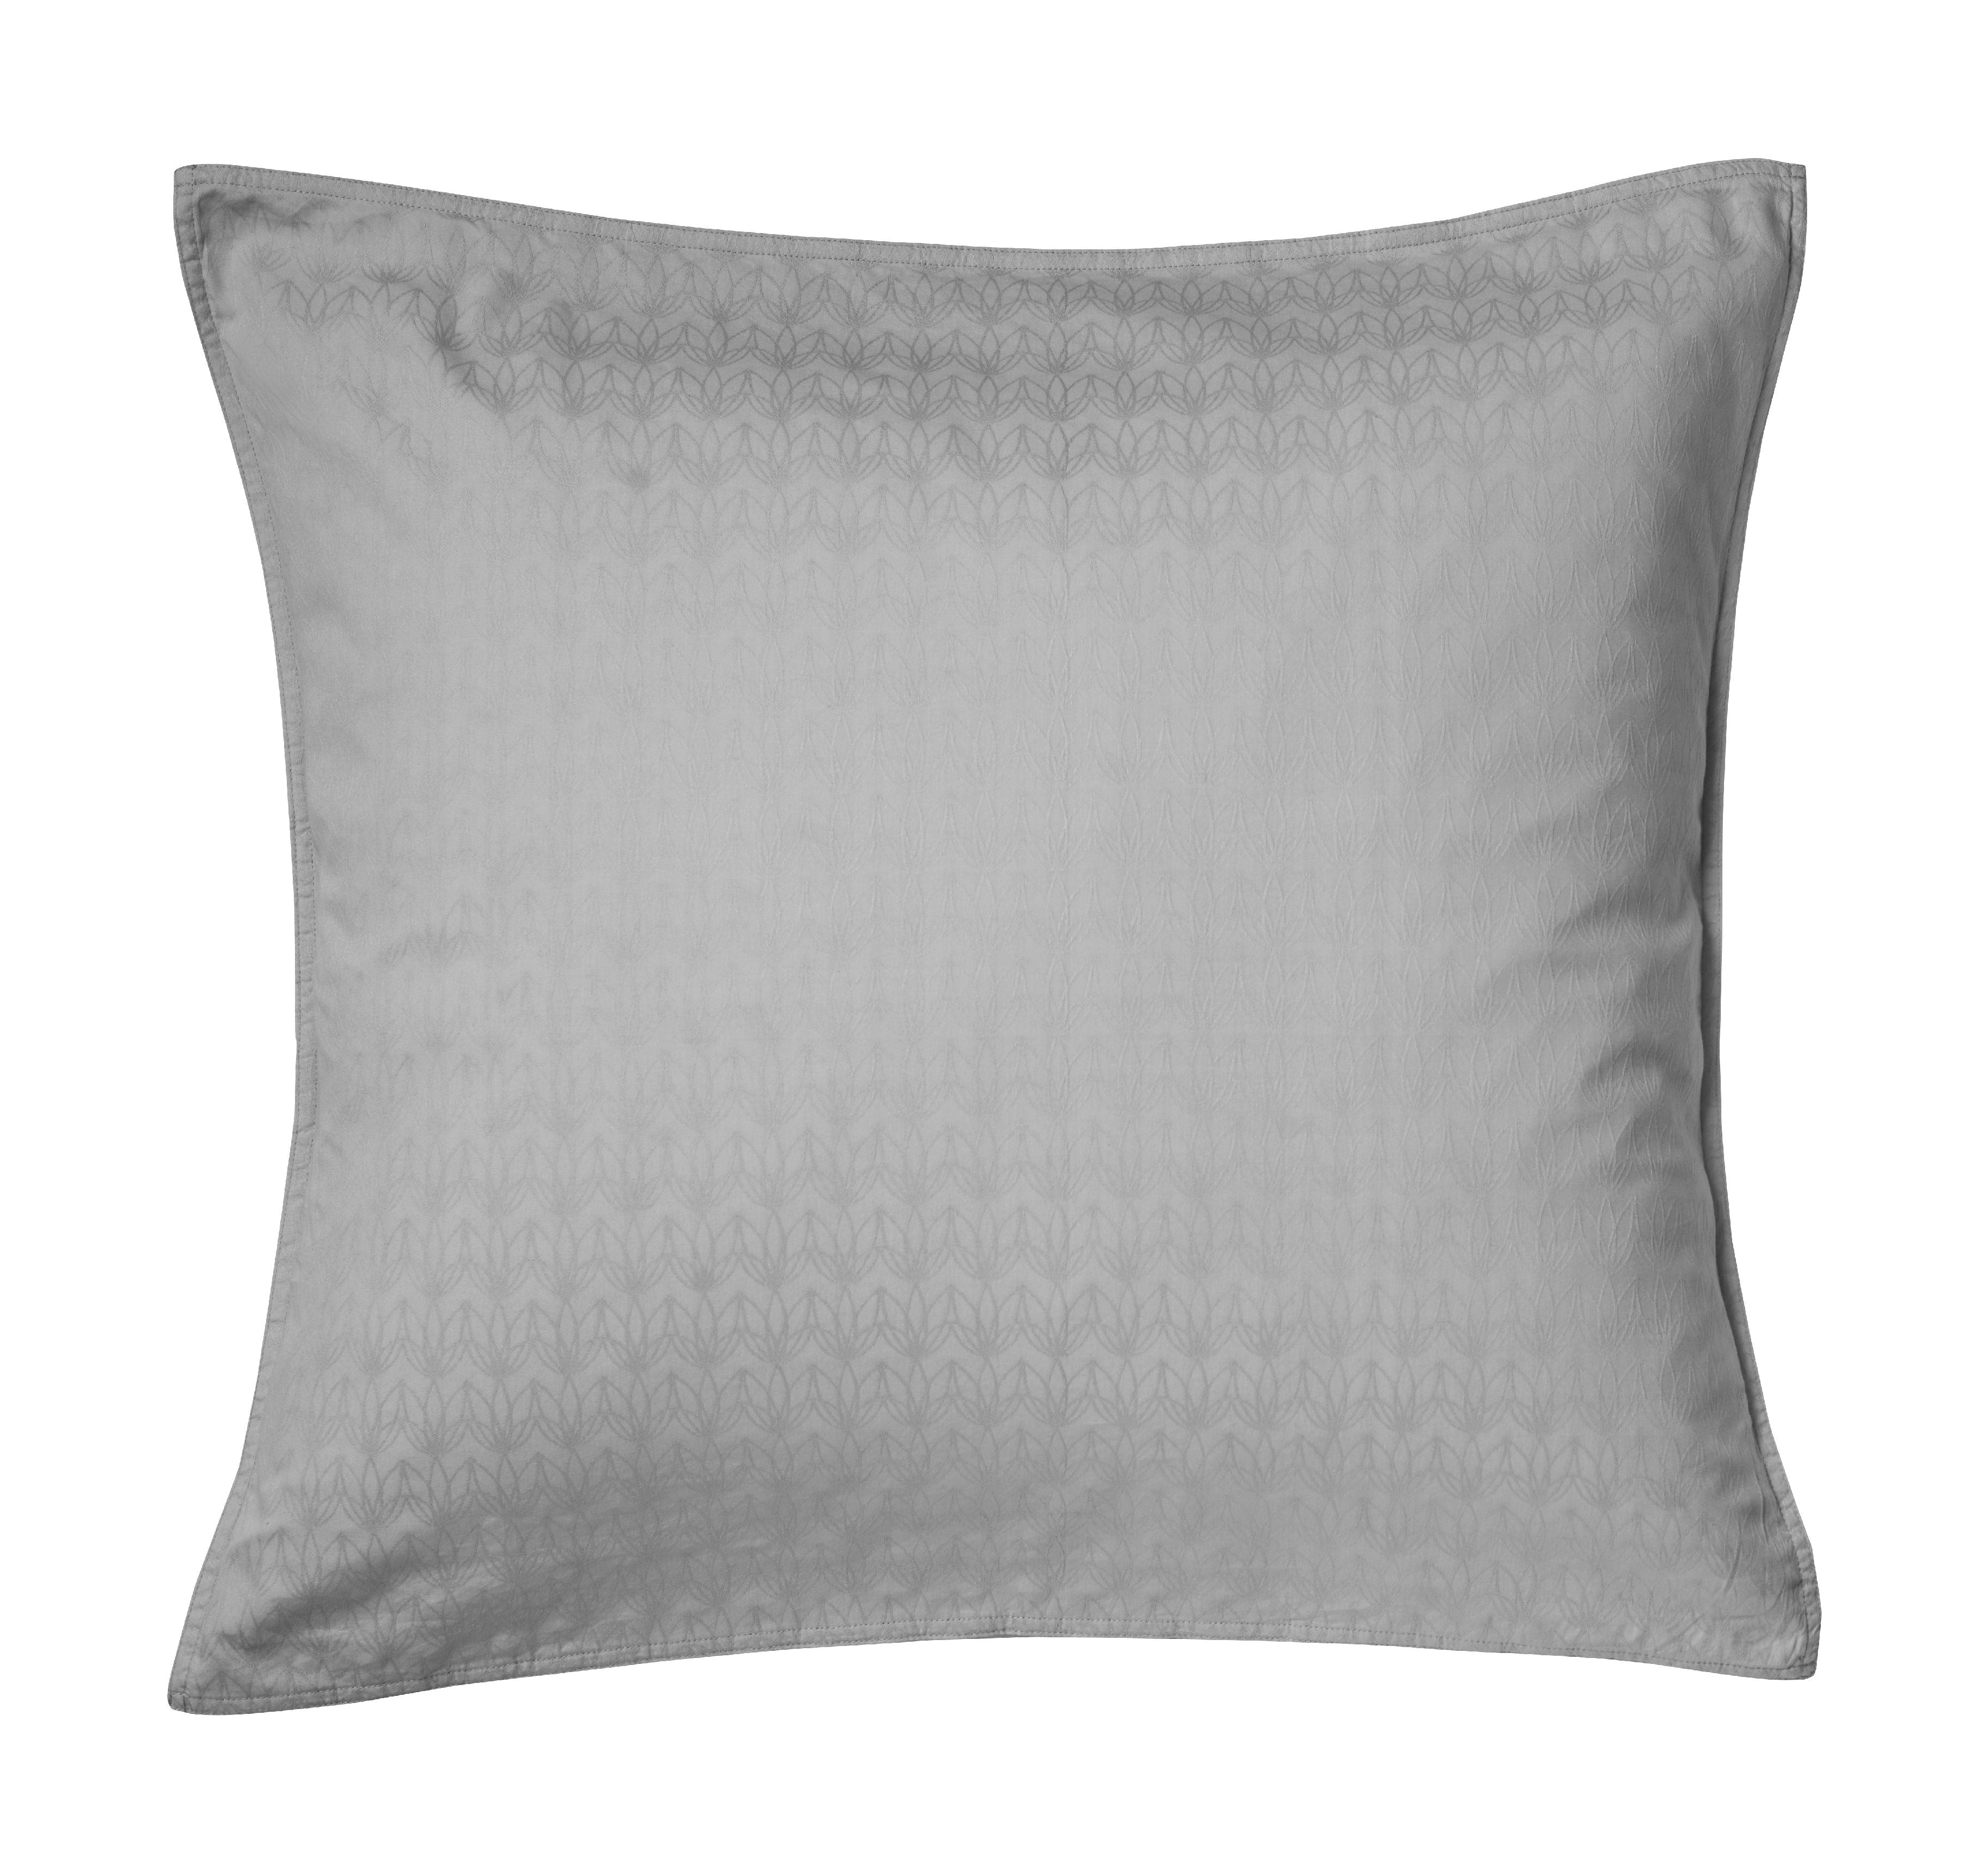 Fdb Møbler R34 Cushion Cover, Light Grey